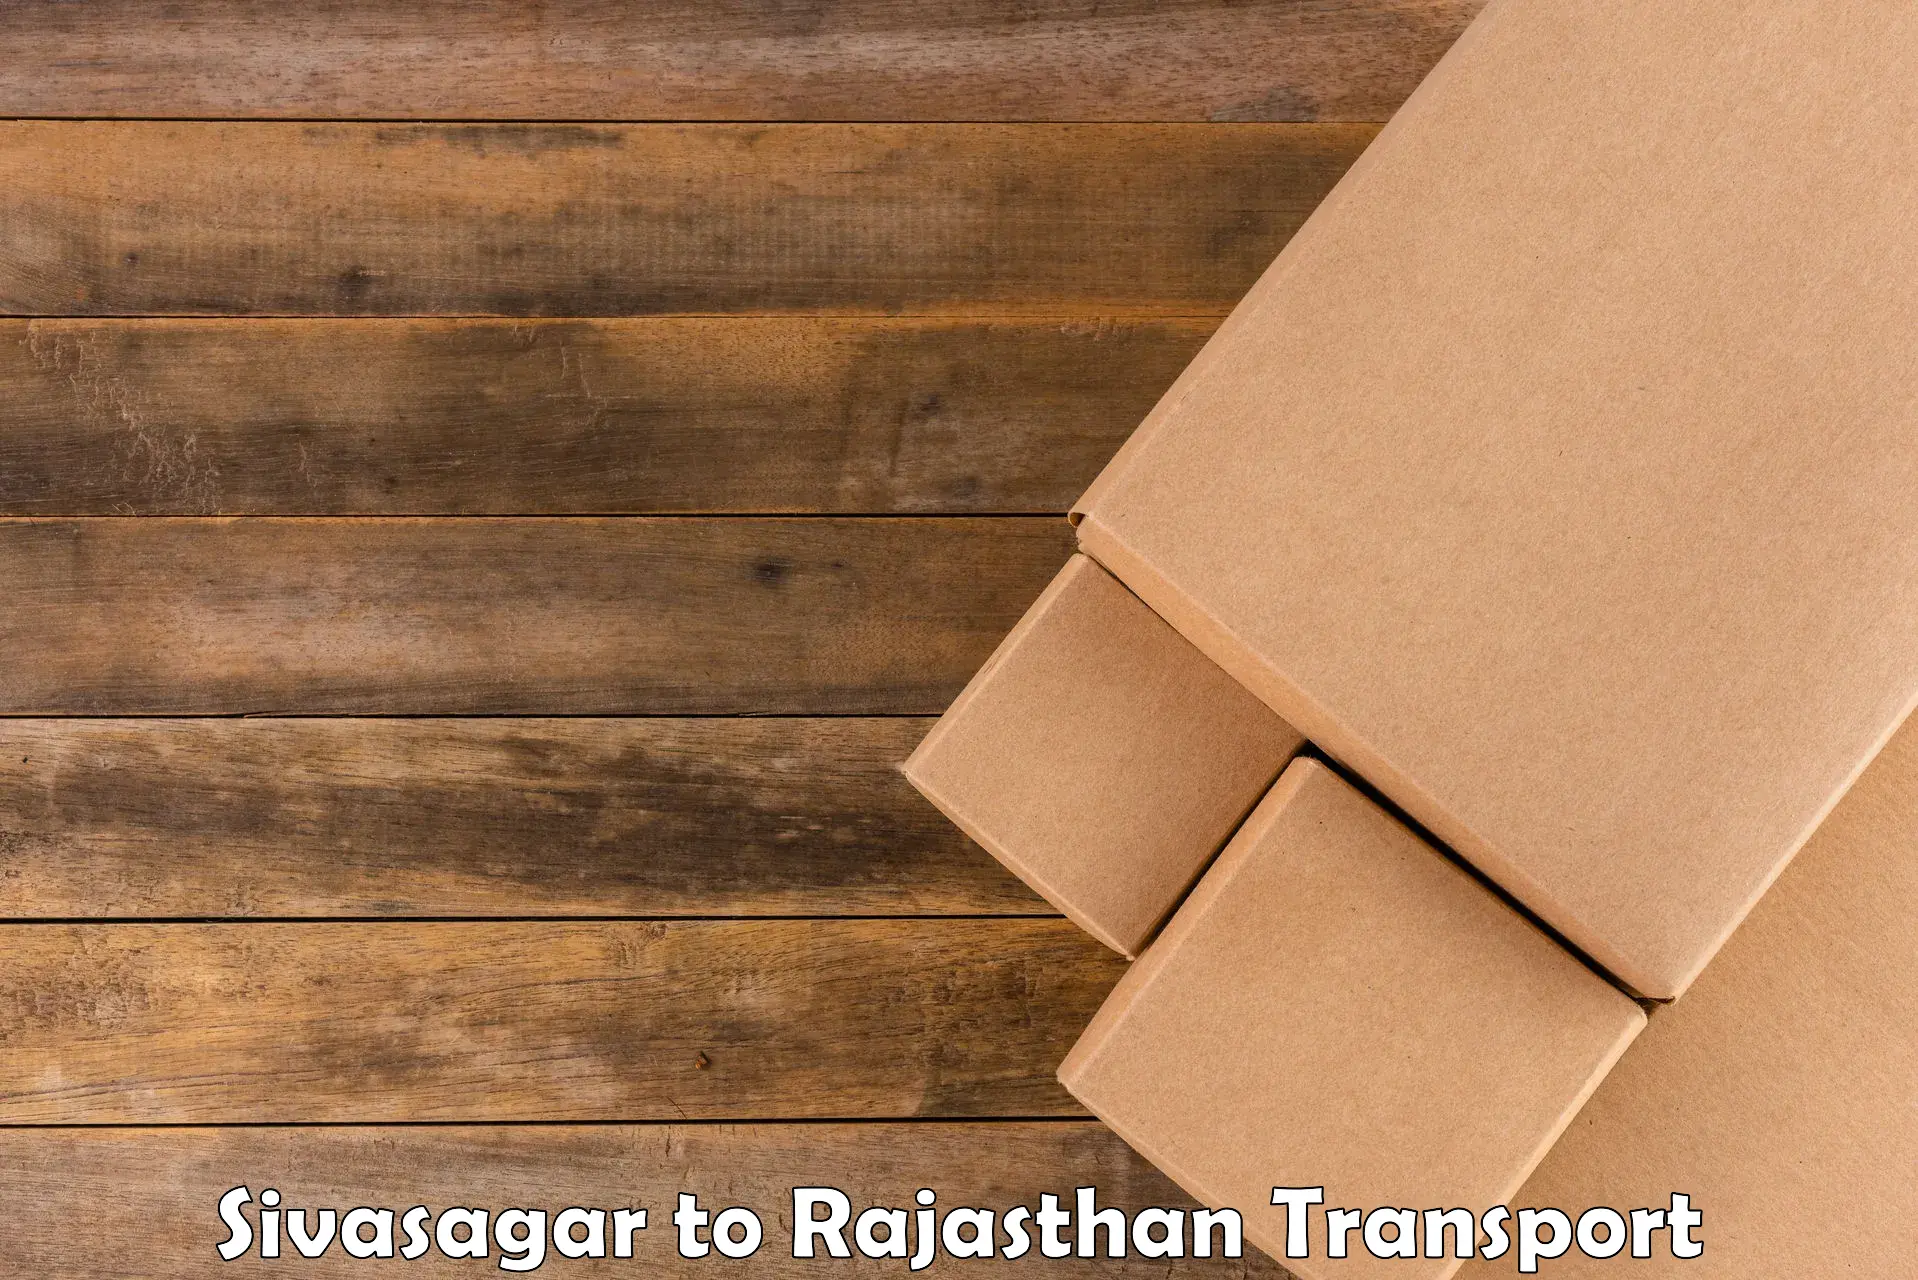 Shipping partner Sivasagar to Laxmangarh